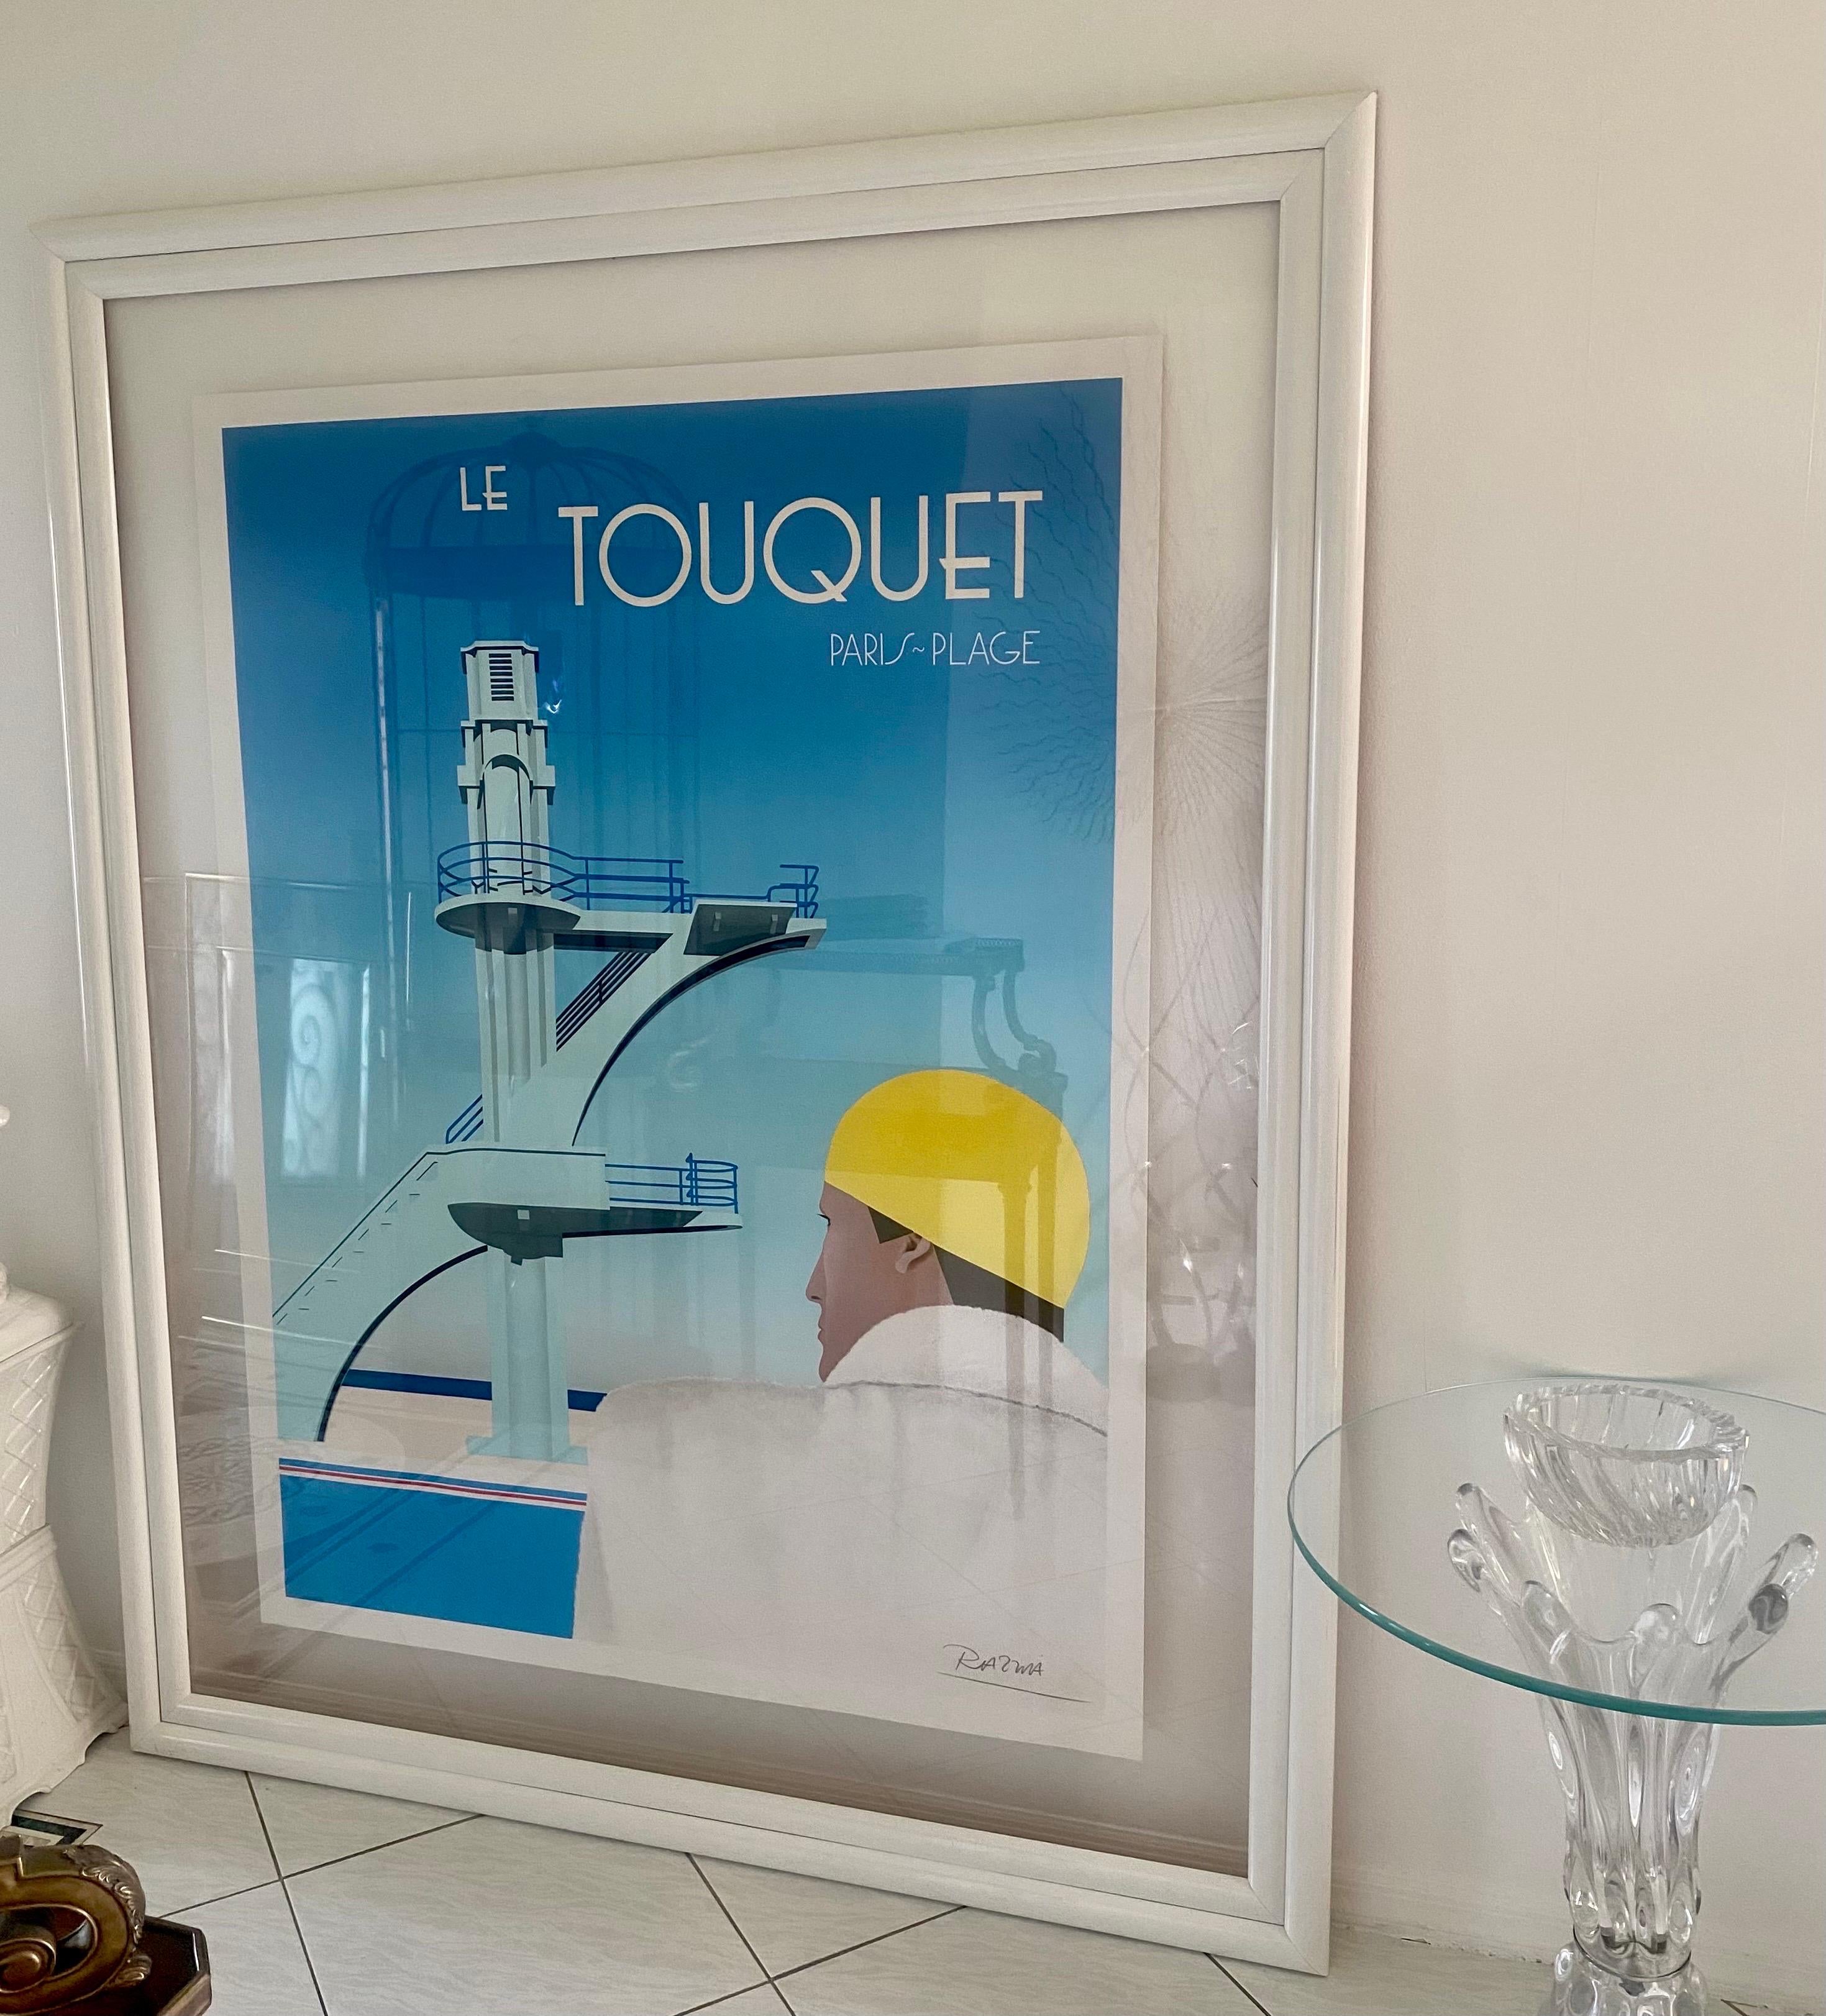 Oster original signé à la main pour Le Touquet Paris Plage datant de 1984 par Razzia, Gerard Courbouleix Deneriaz né en 1950.

Le Touquet Paris Plage est une station balnéaire française située sur la Côte d'Opale, au bord de la Manche. La célèbre